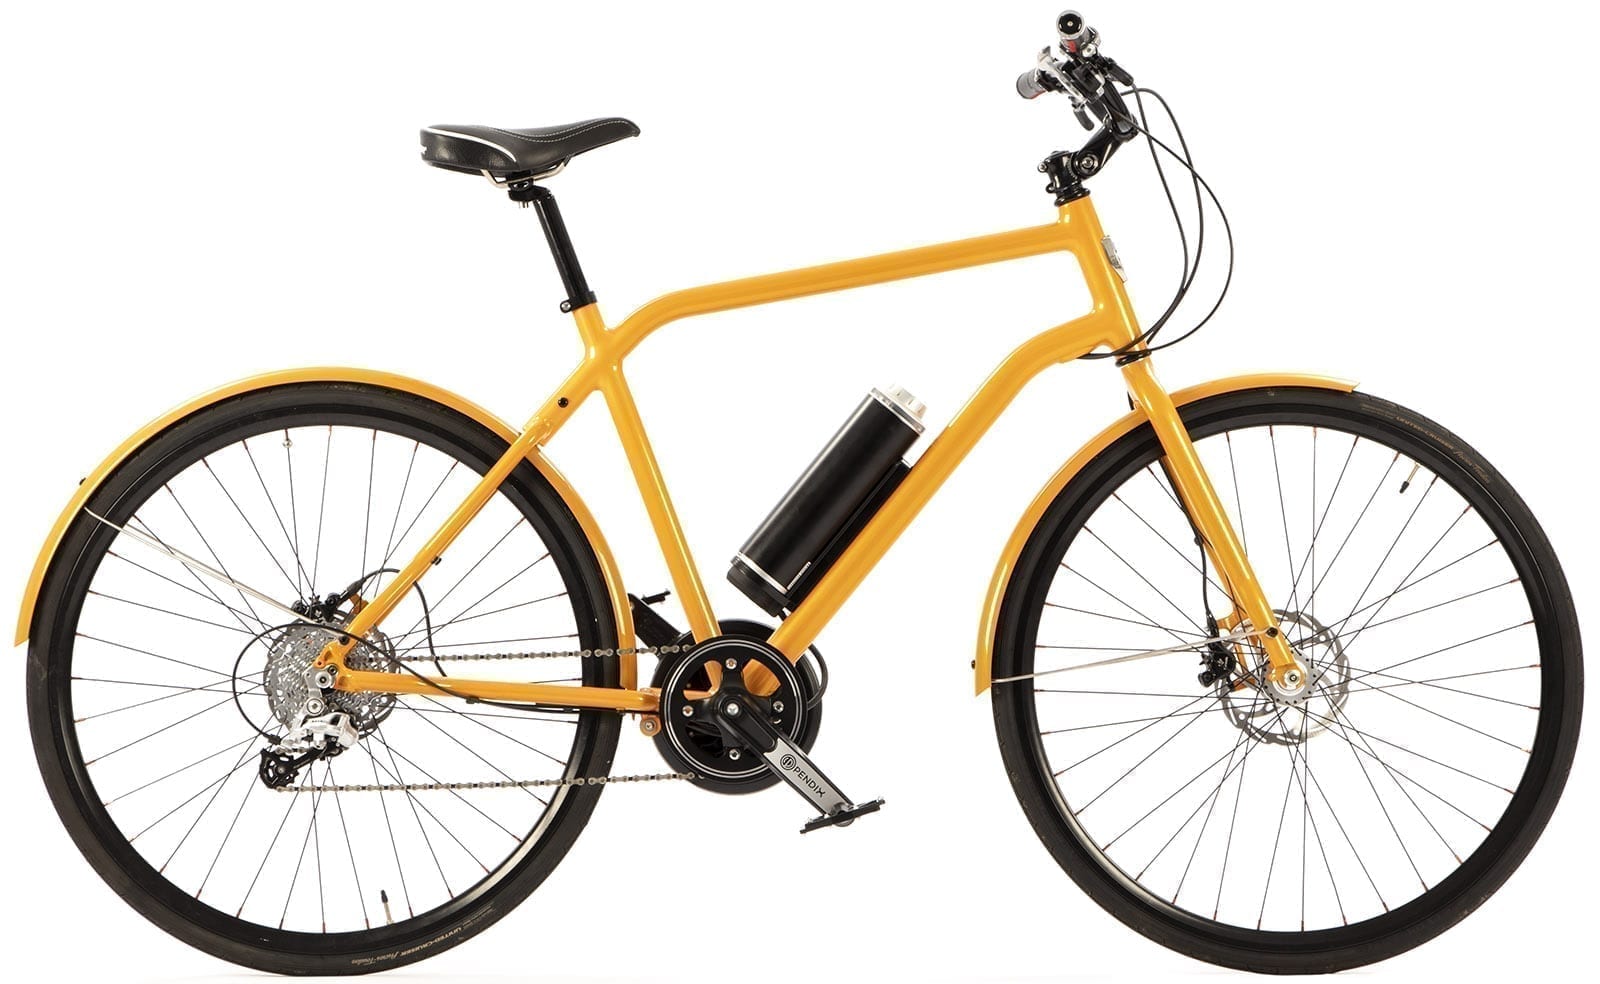 Vélo urbain LiFE Electrique Tangerine Design électrique cadre tout aluminium